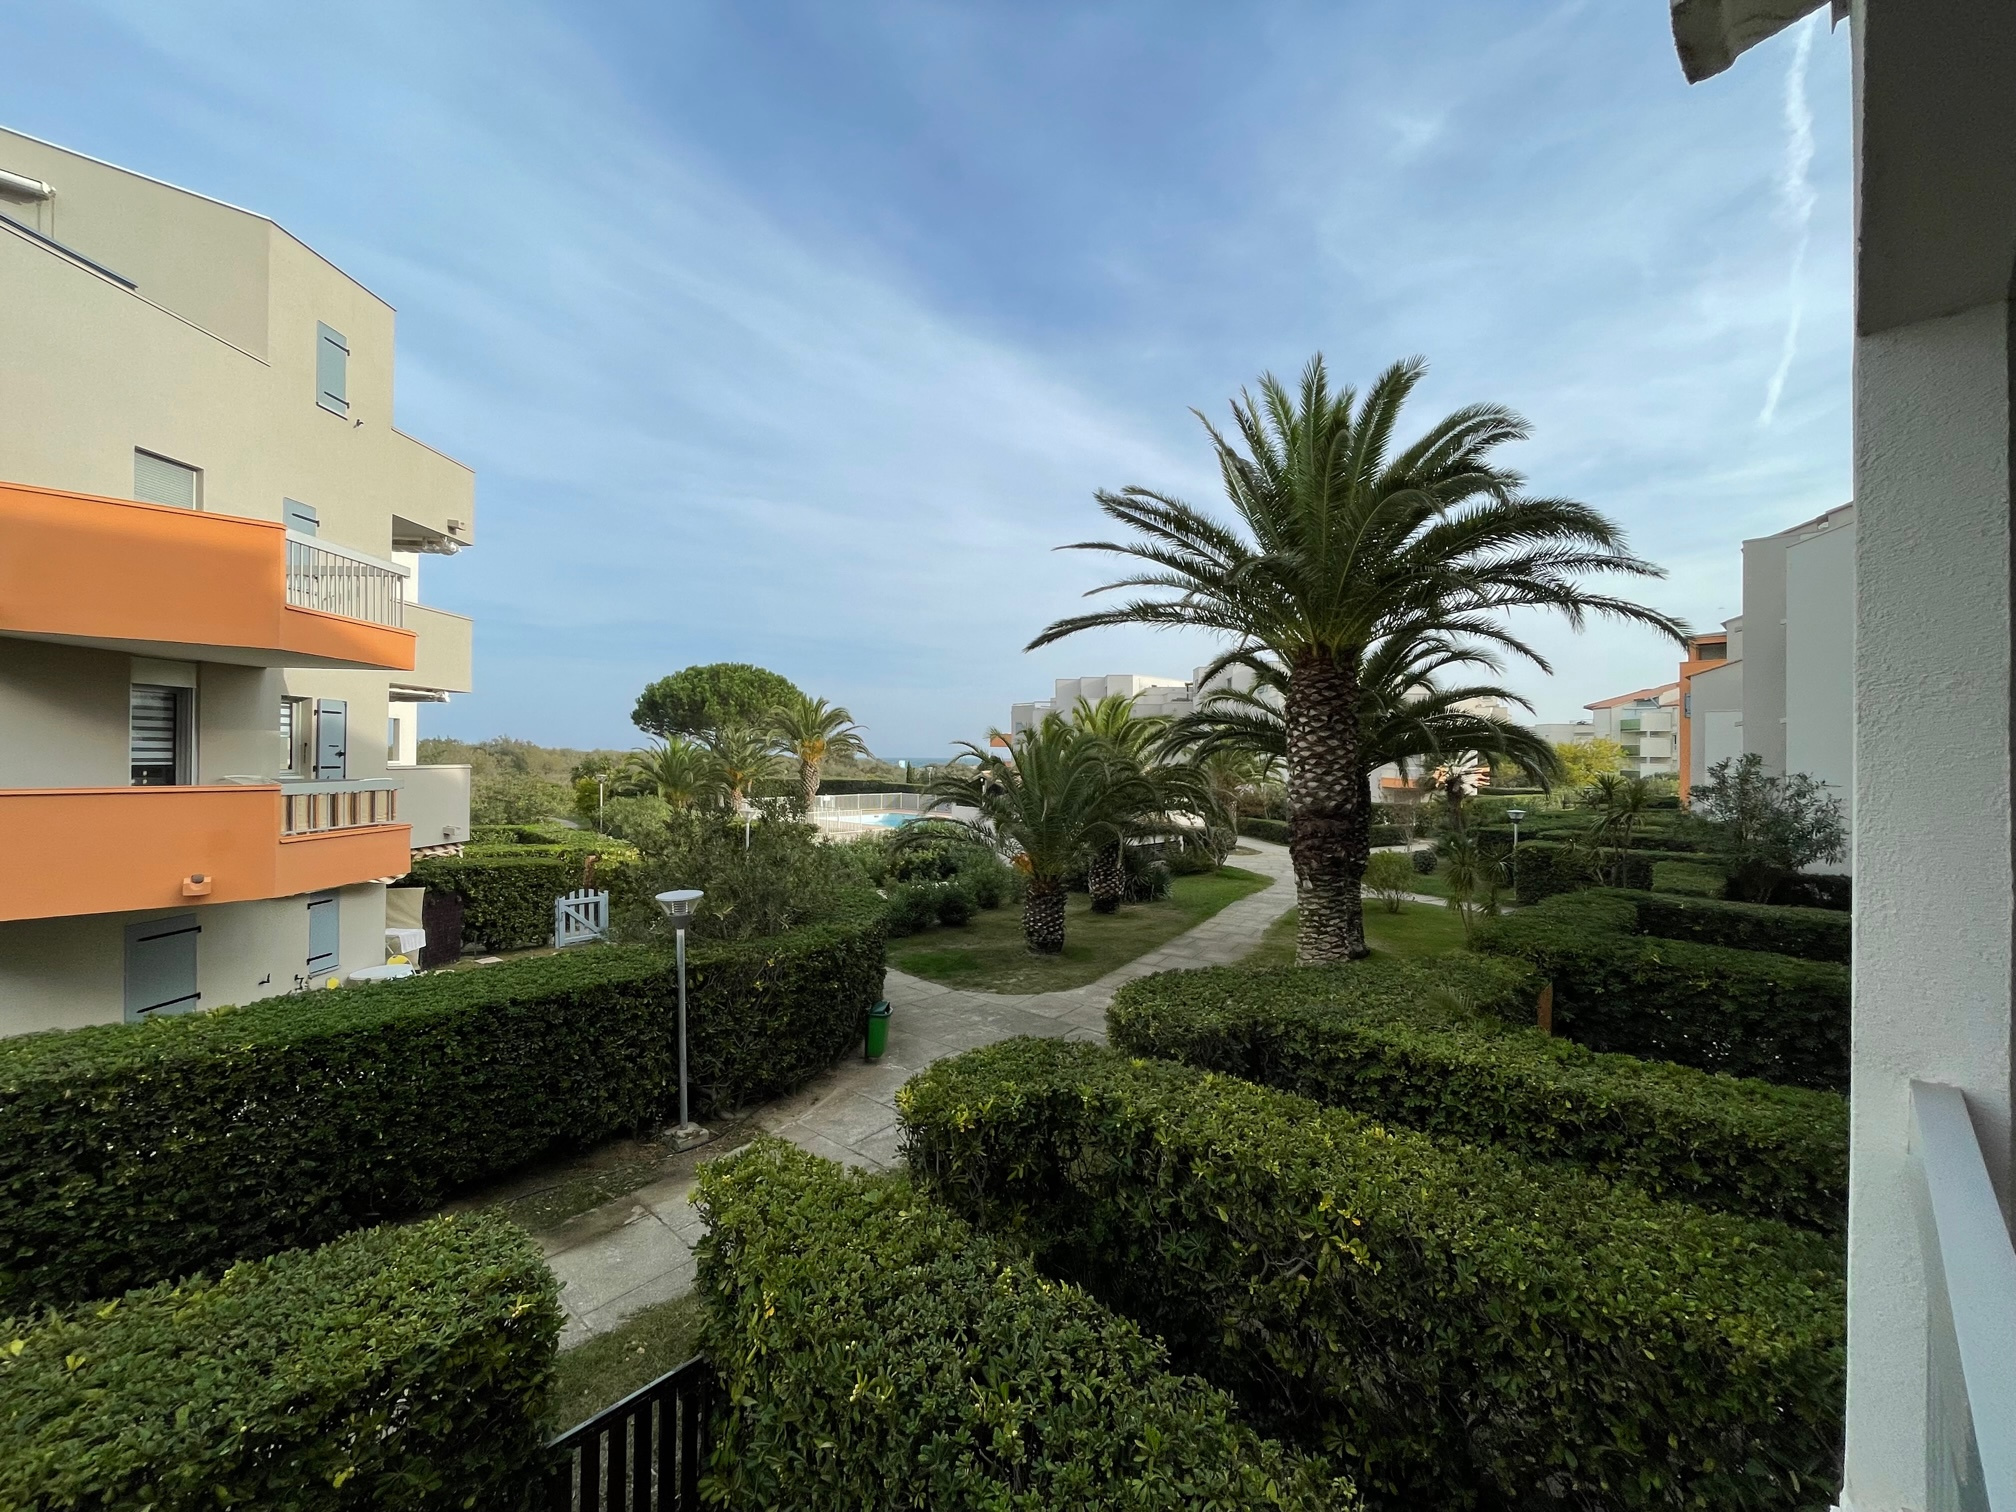 À vendre appartement de 31.71m2 à St cyprien plage (66750)